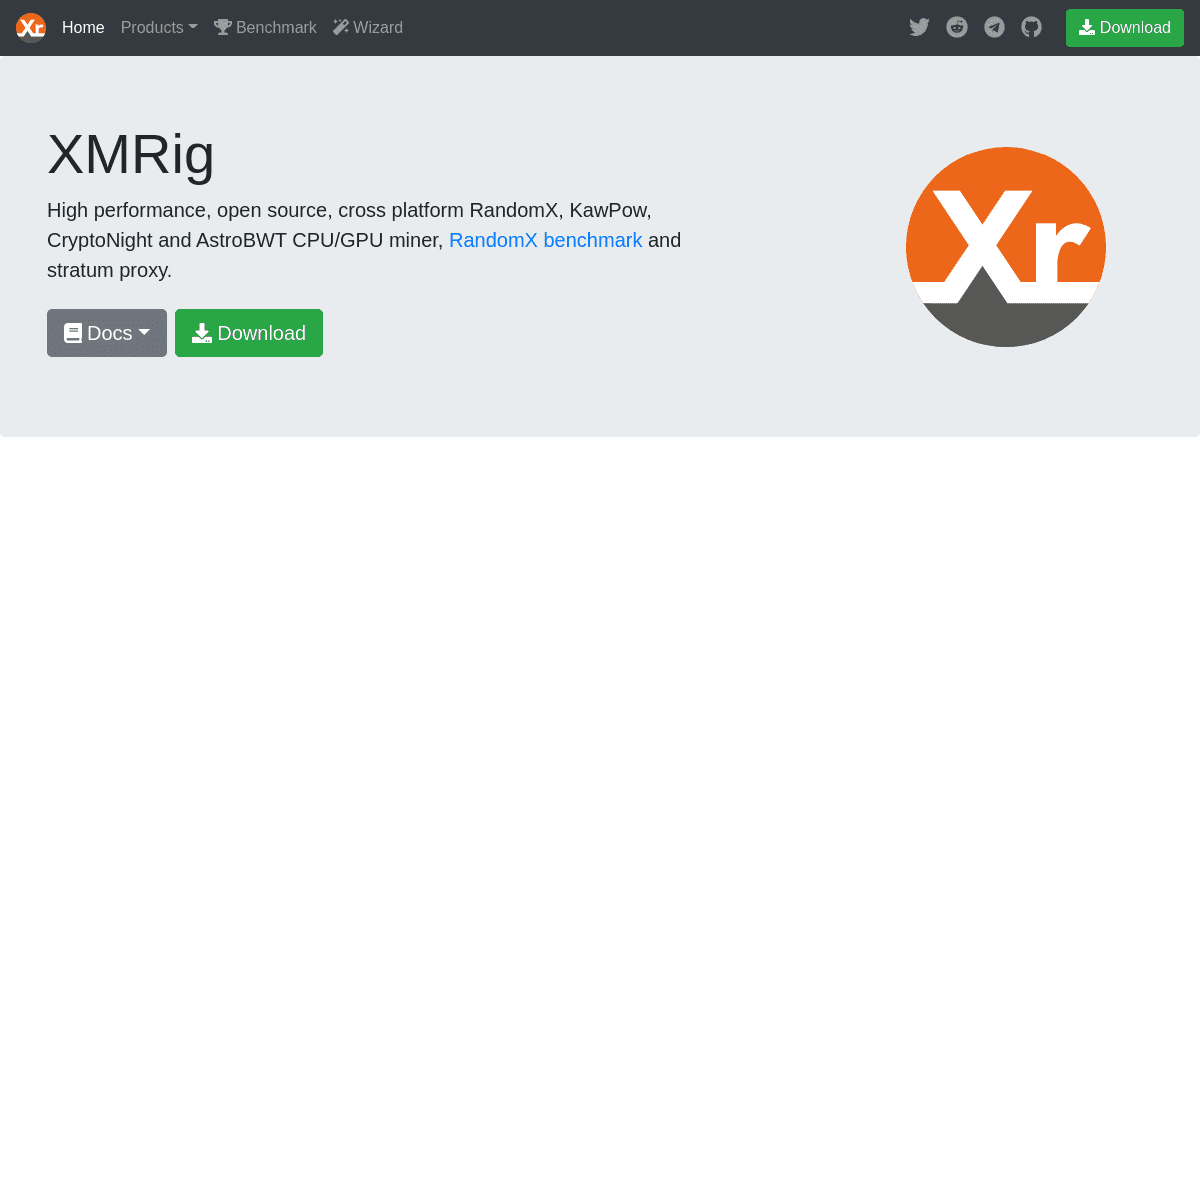 A complete backup of https://xmrig.com